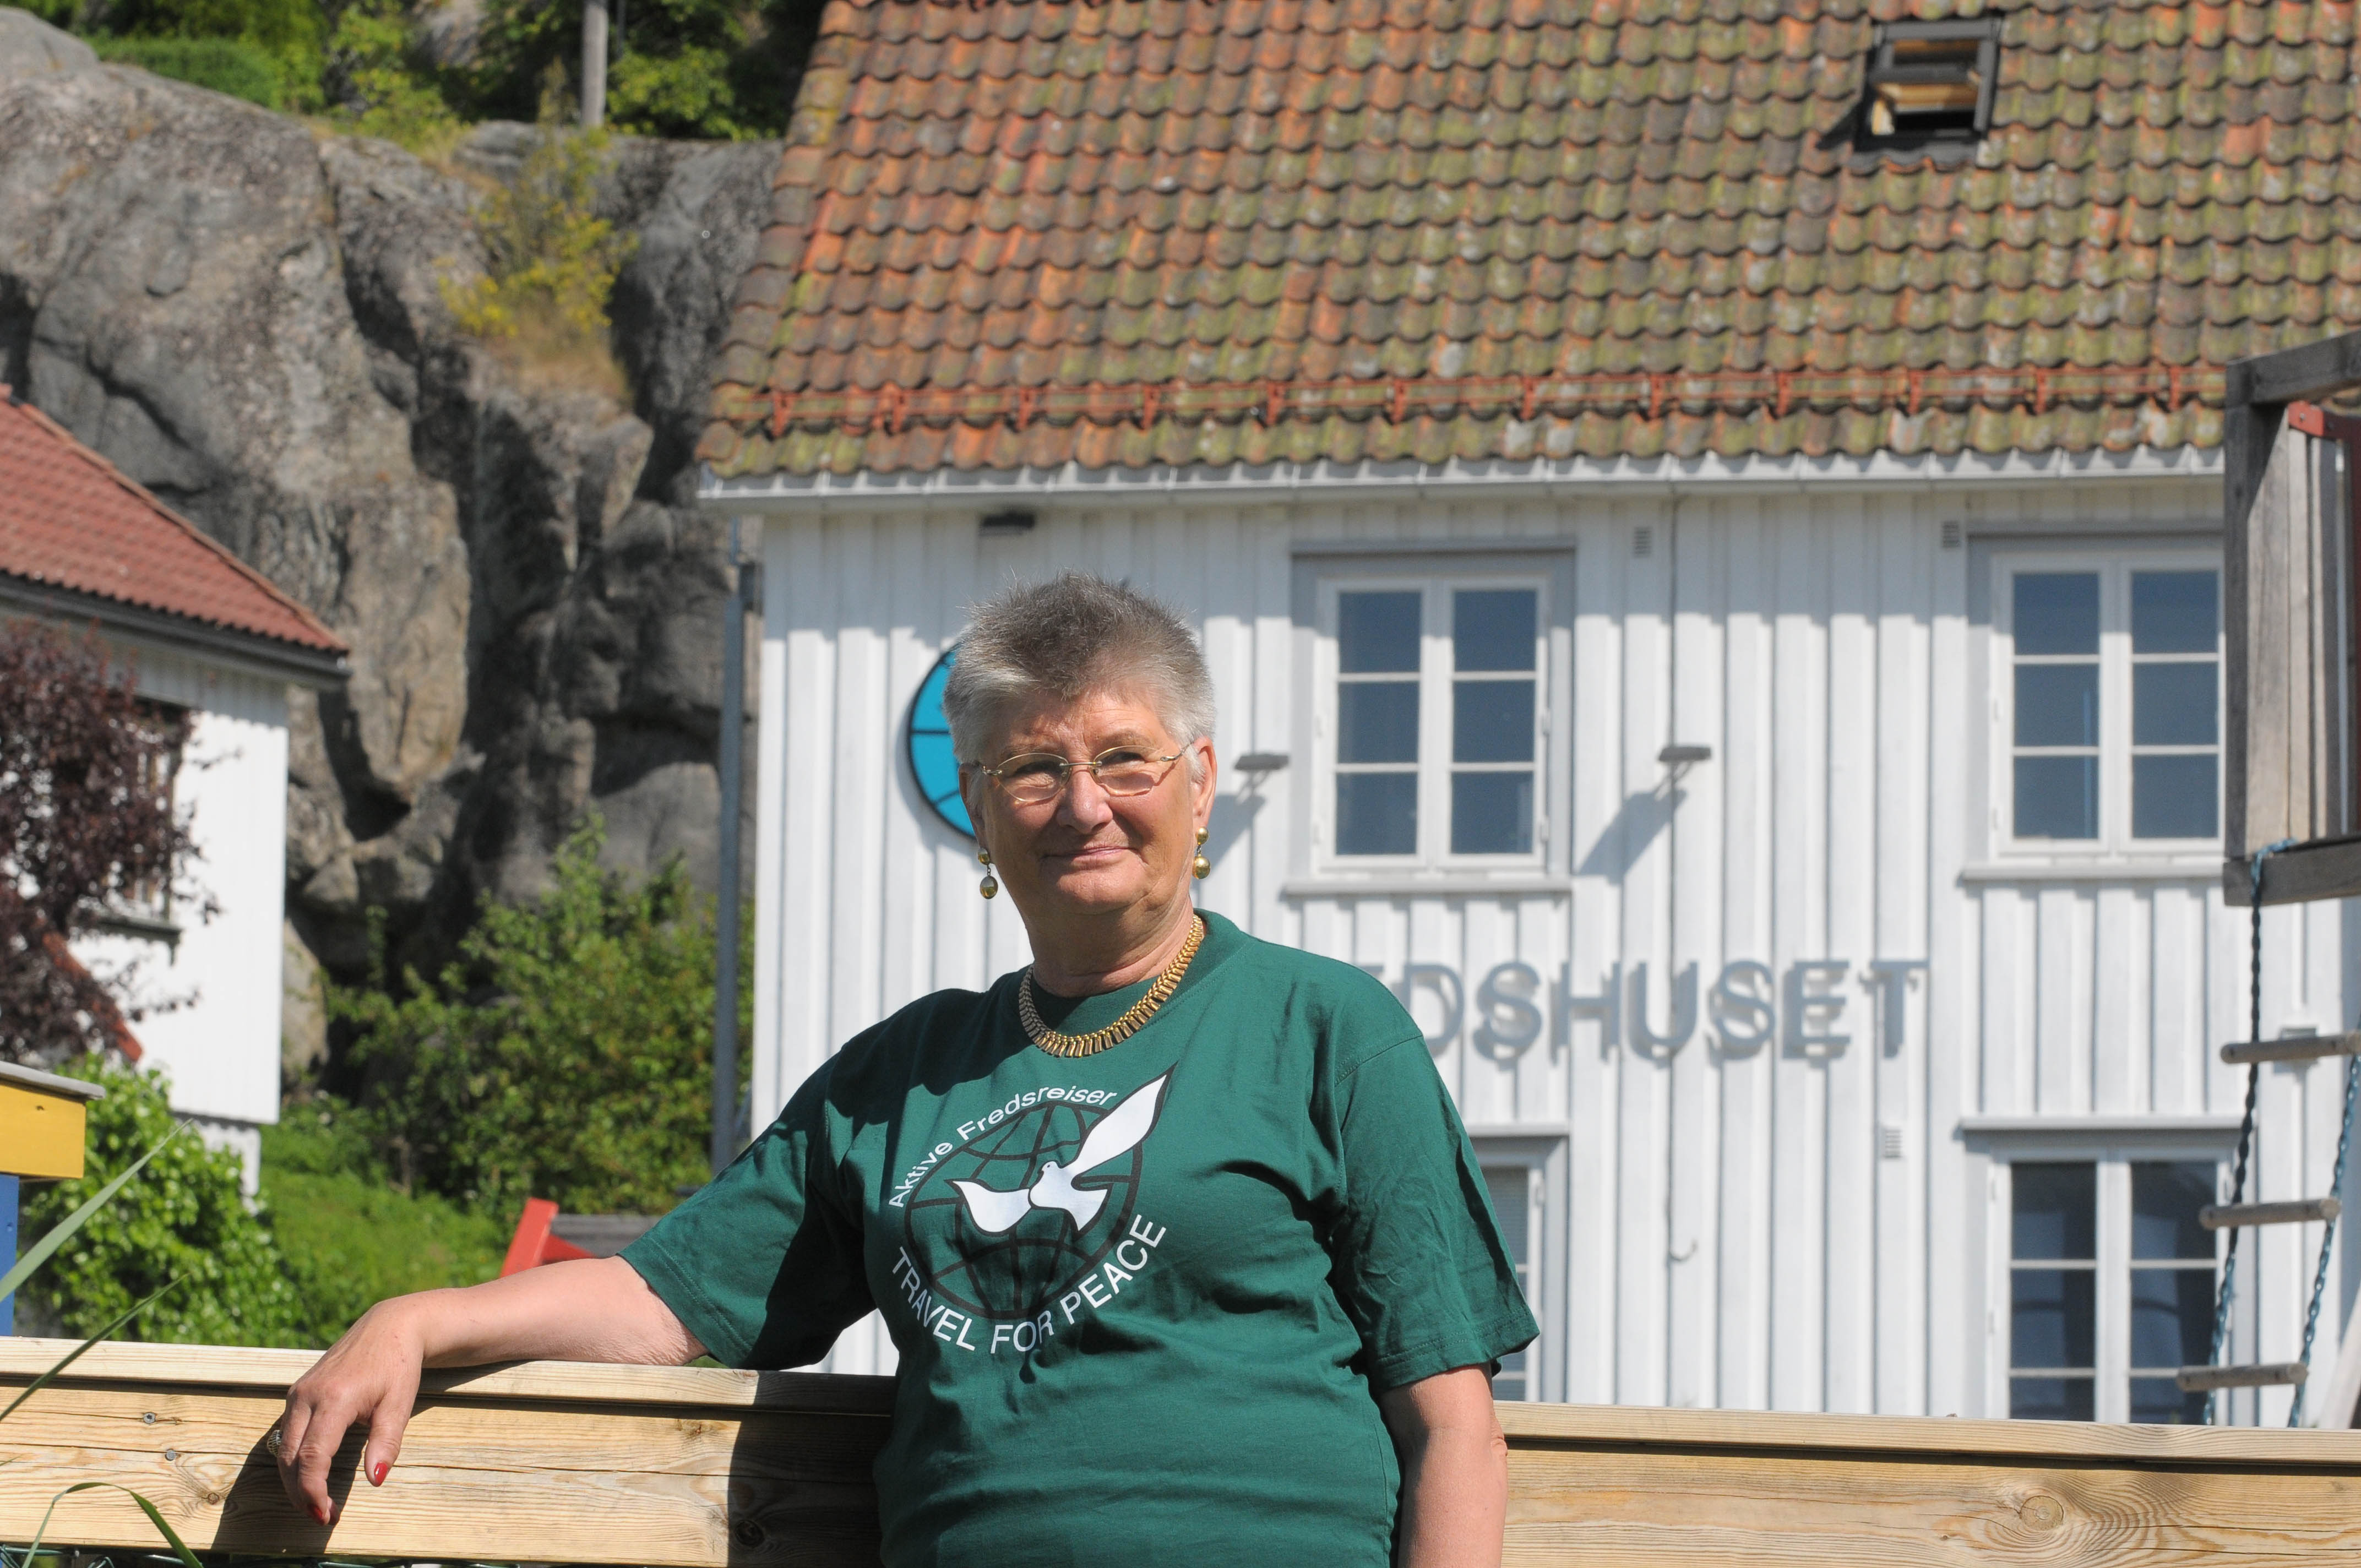 Helga Arntzen foran Fredshuset